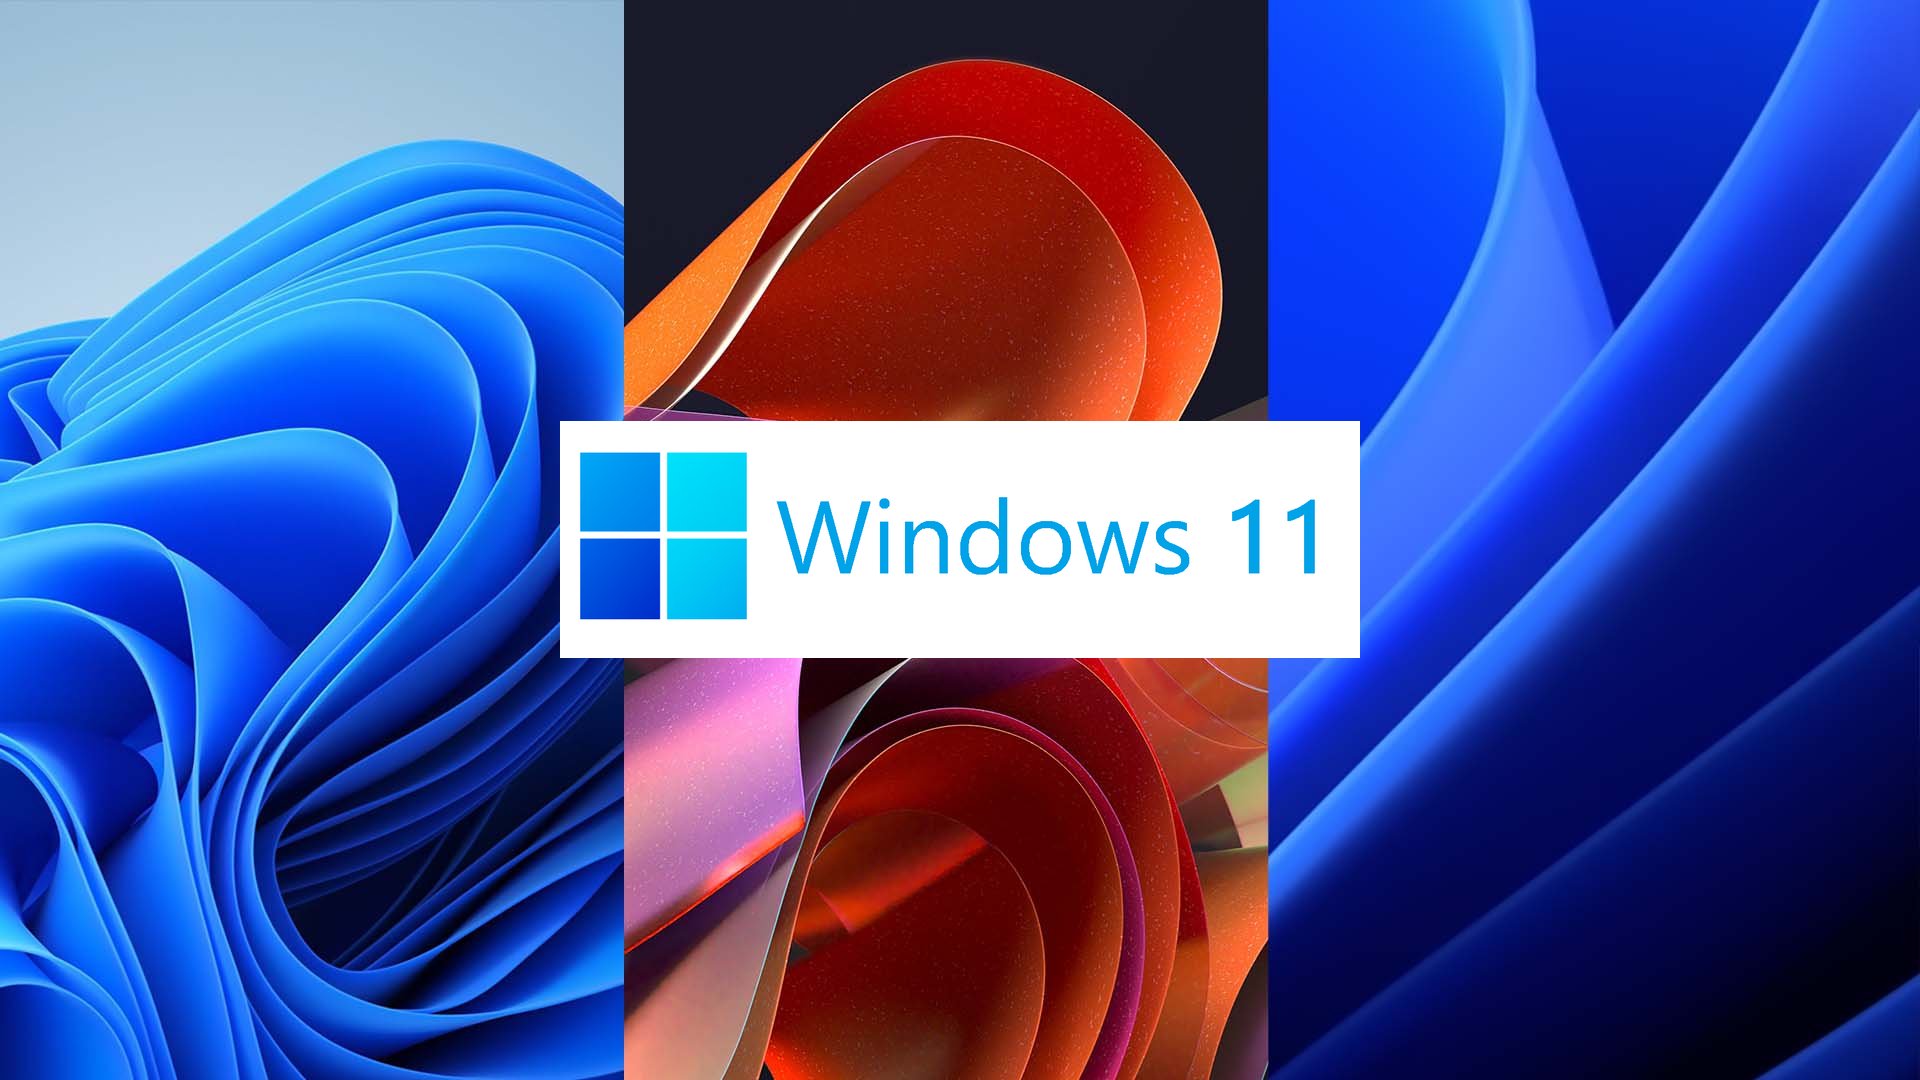 Chia sẻ bộ hình nền Windows 11 vừa ra mắt (4K Resolution)